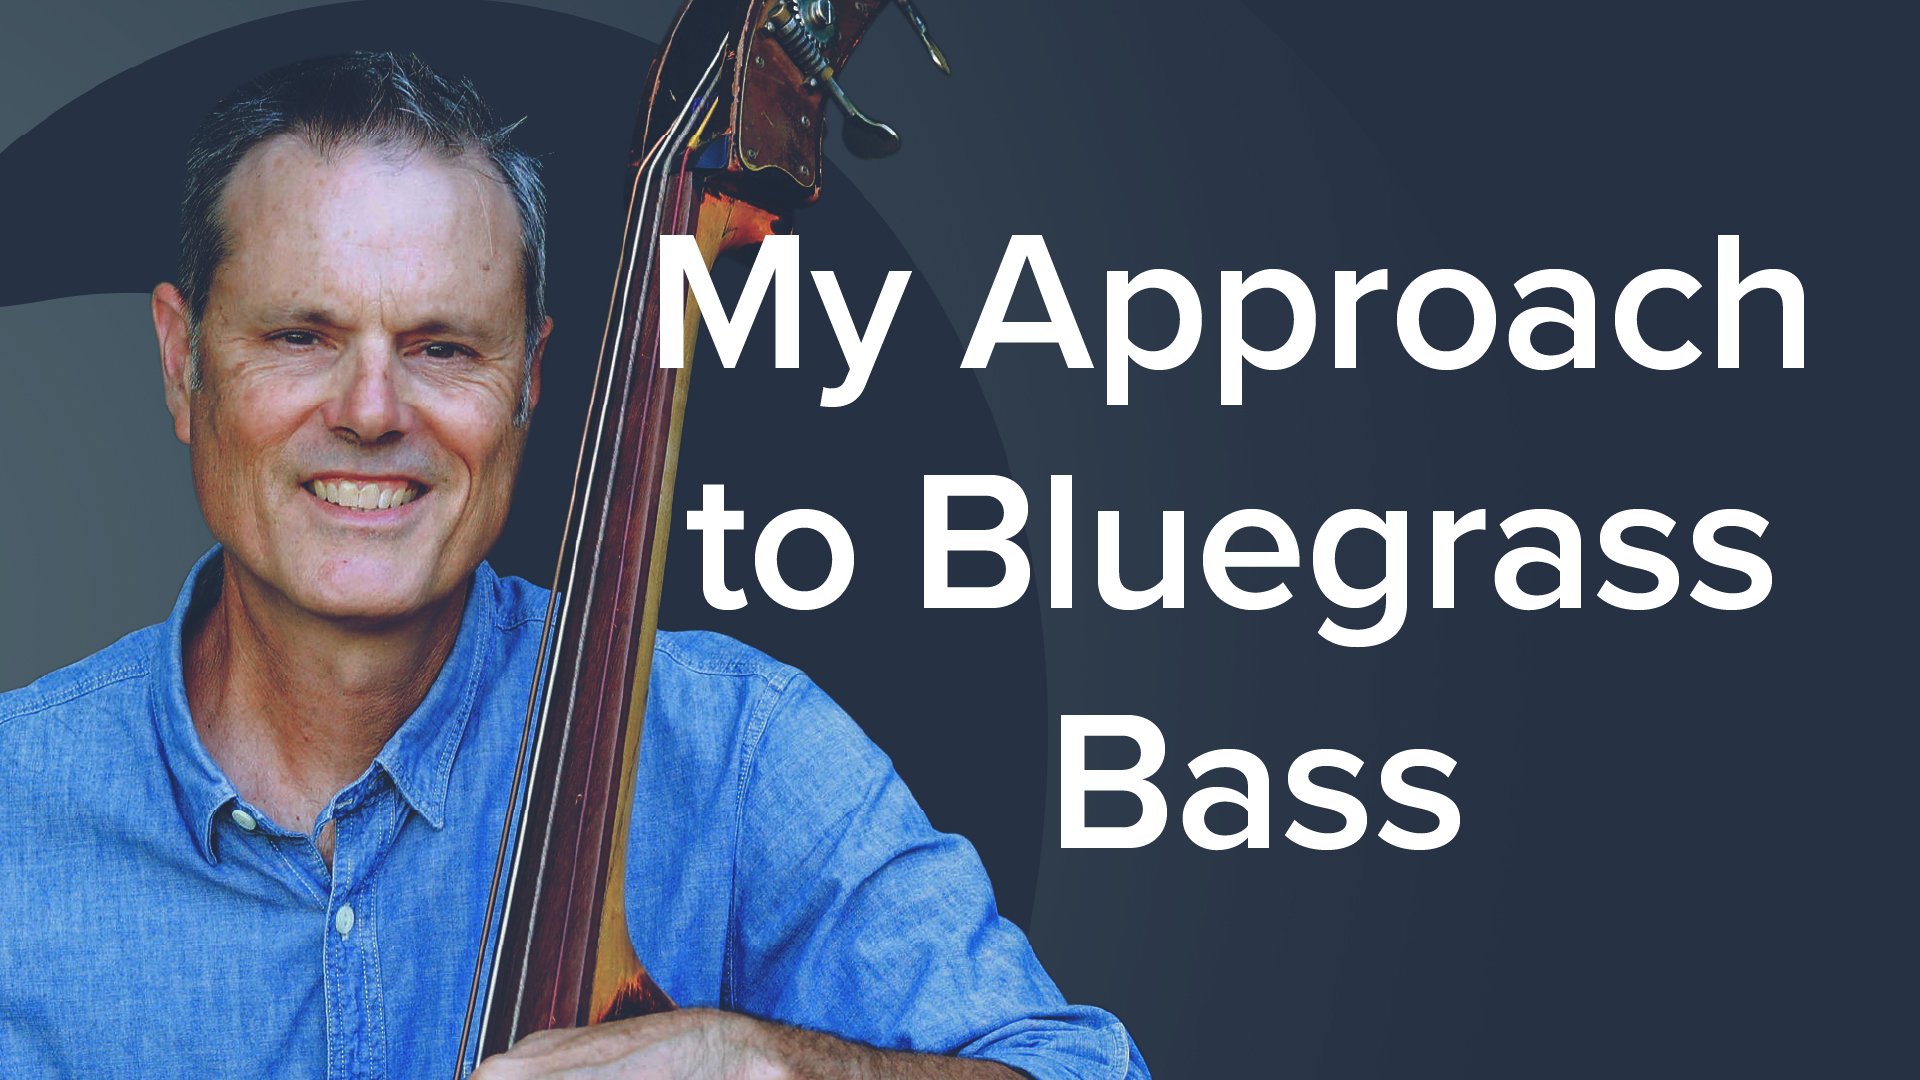 My Approach to Bluegrass Bass